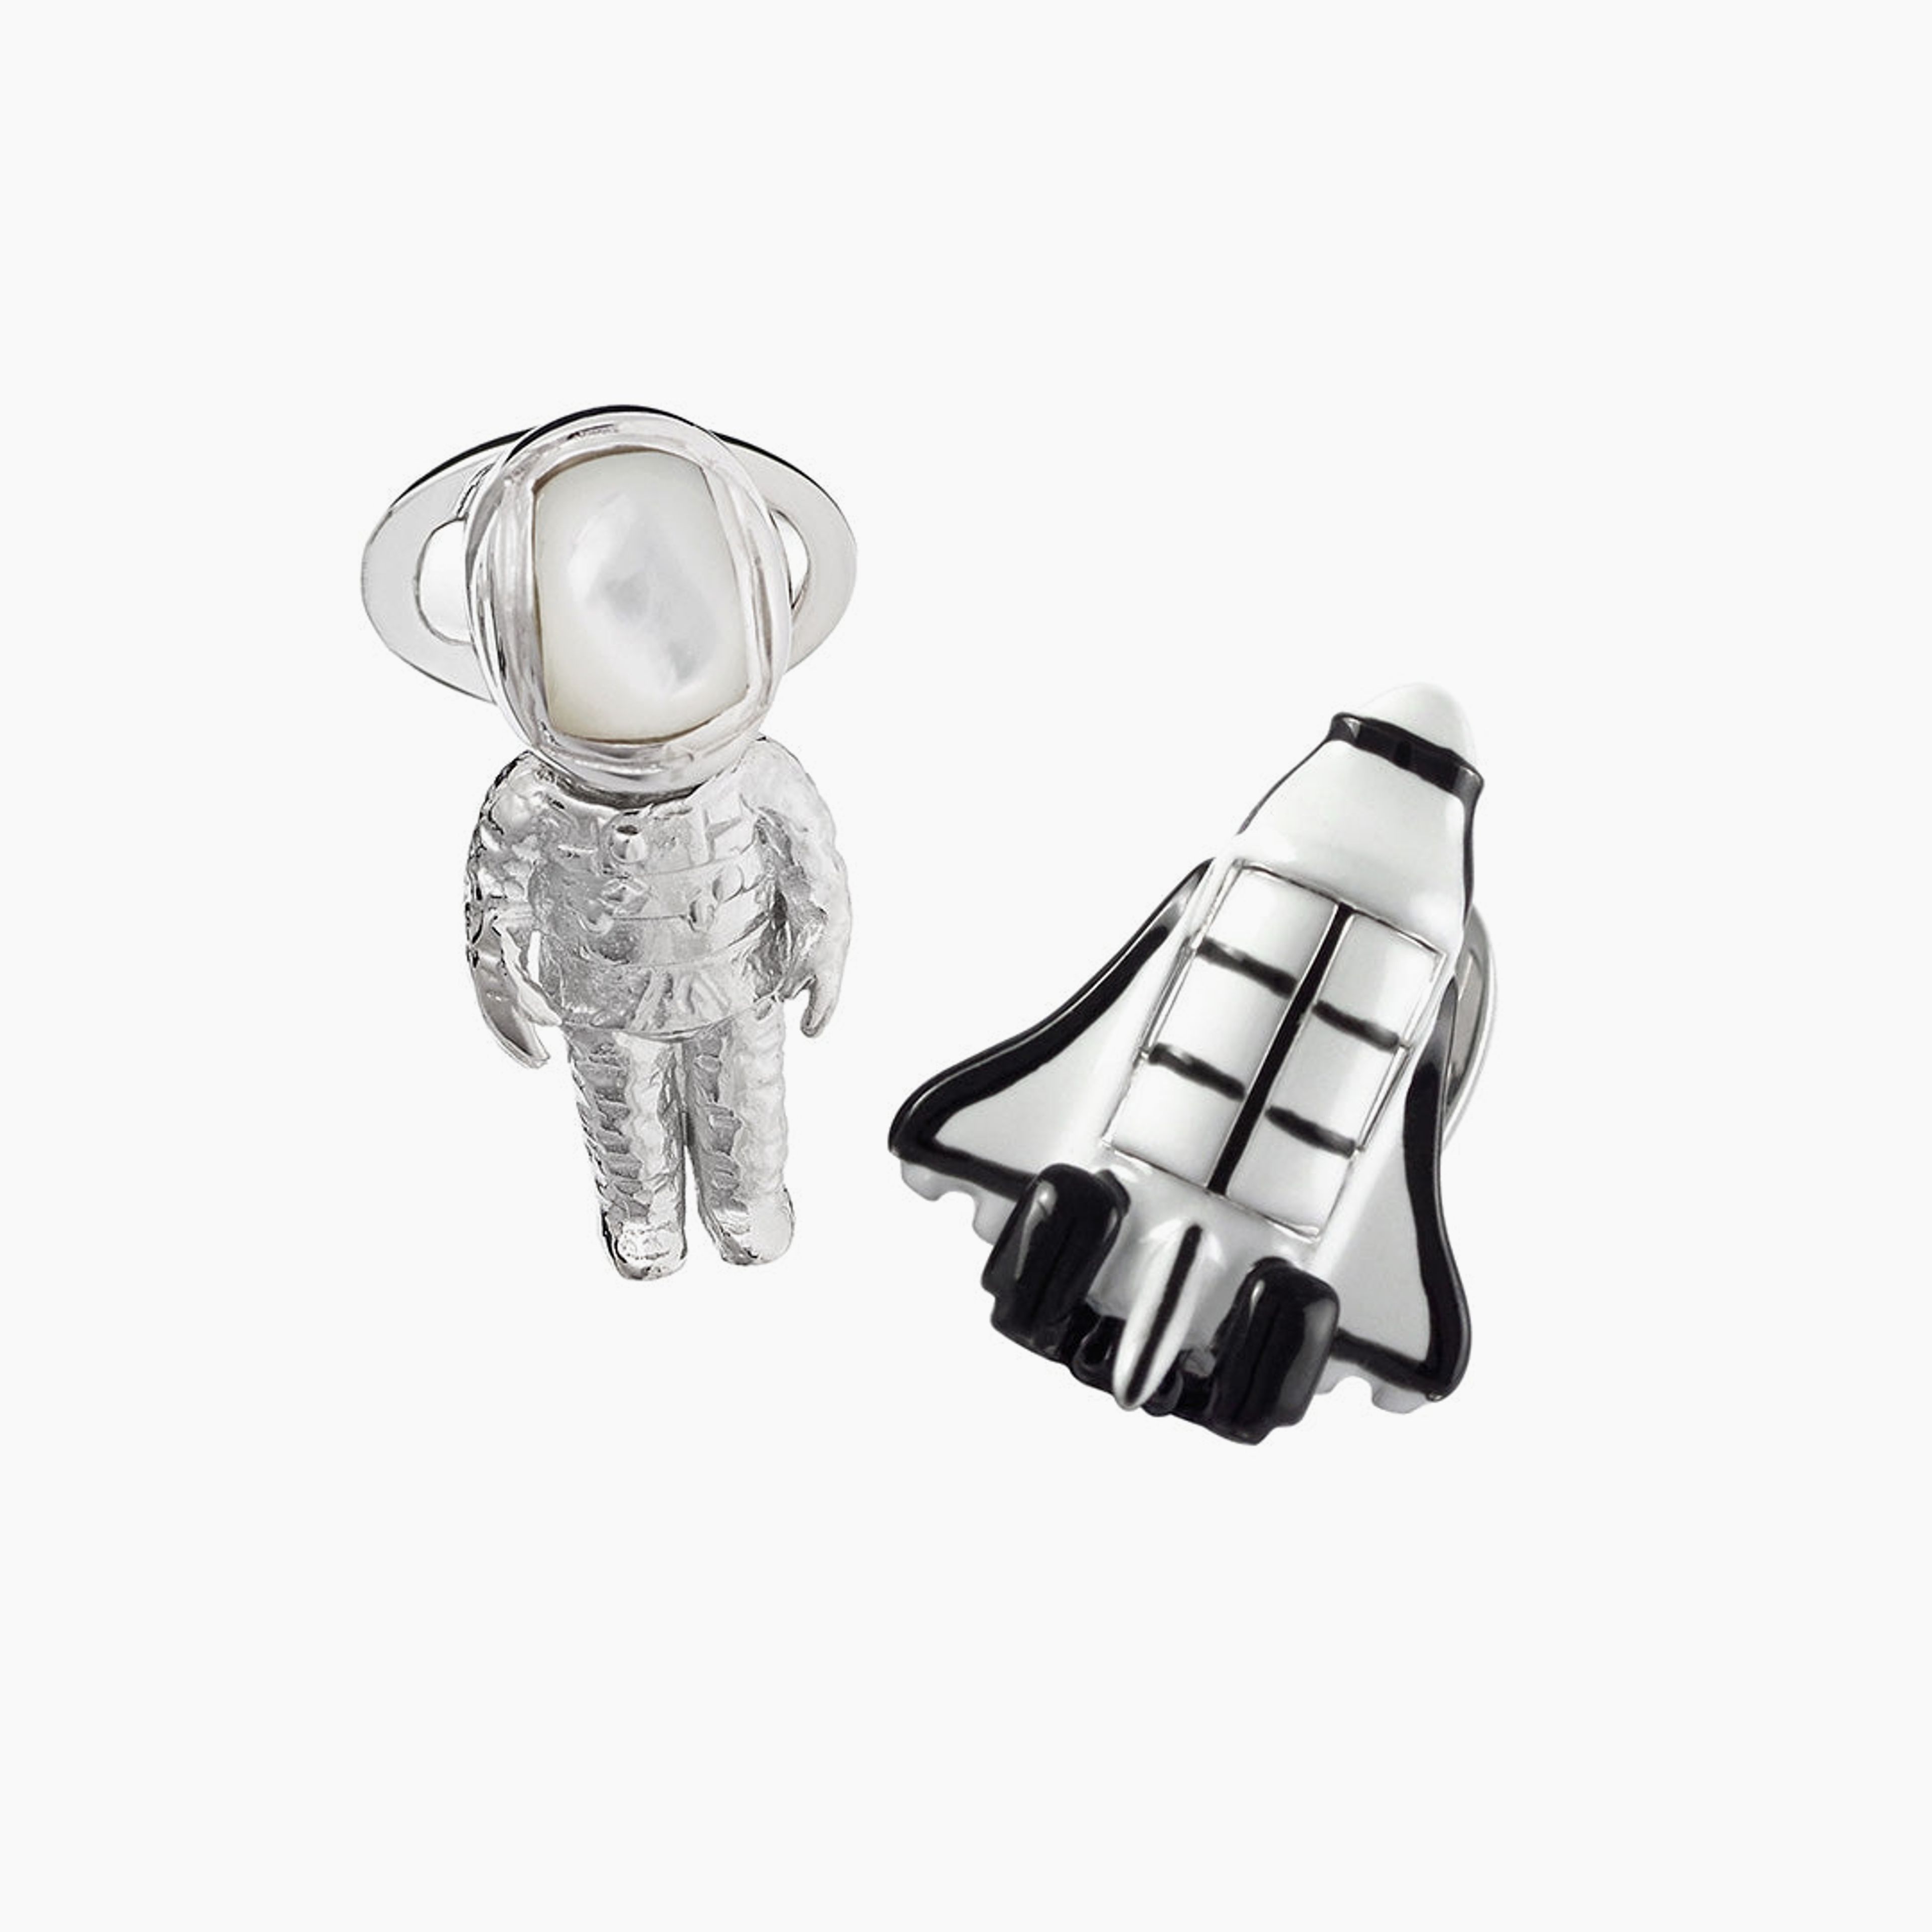 Shuttle & Astronaut Bobble Head Sterling Silver & Gemstone Cufflinks | Jan Leslie